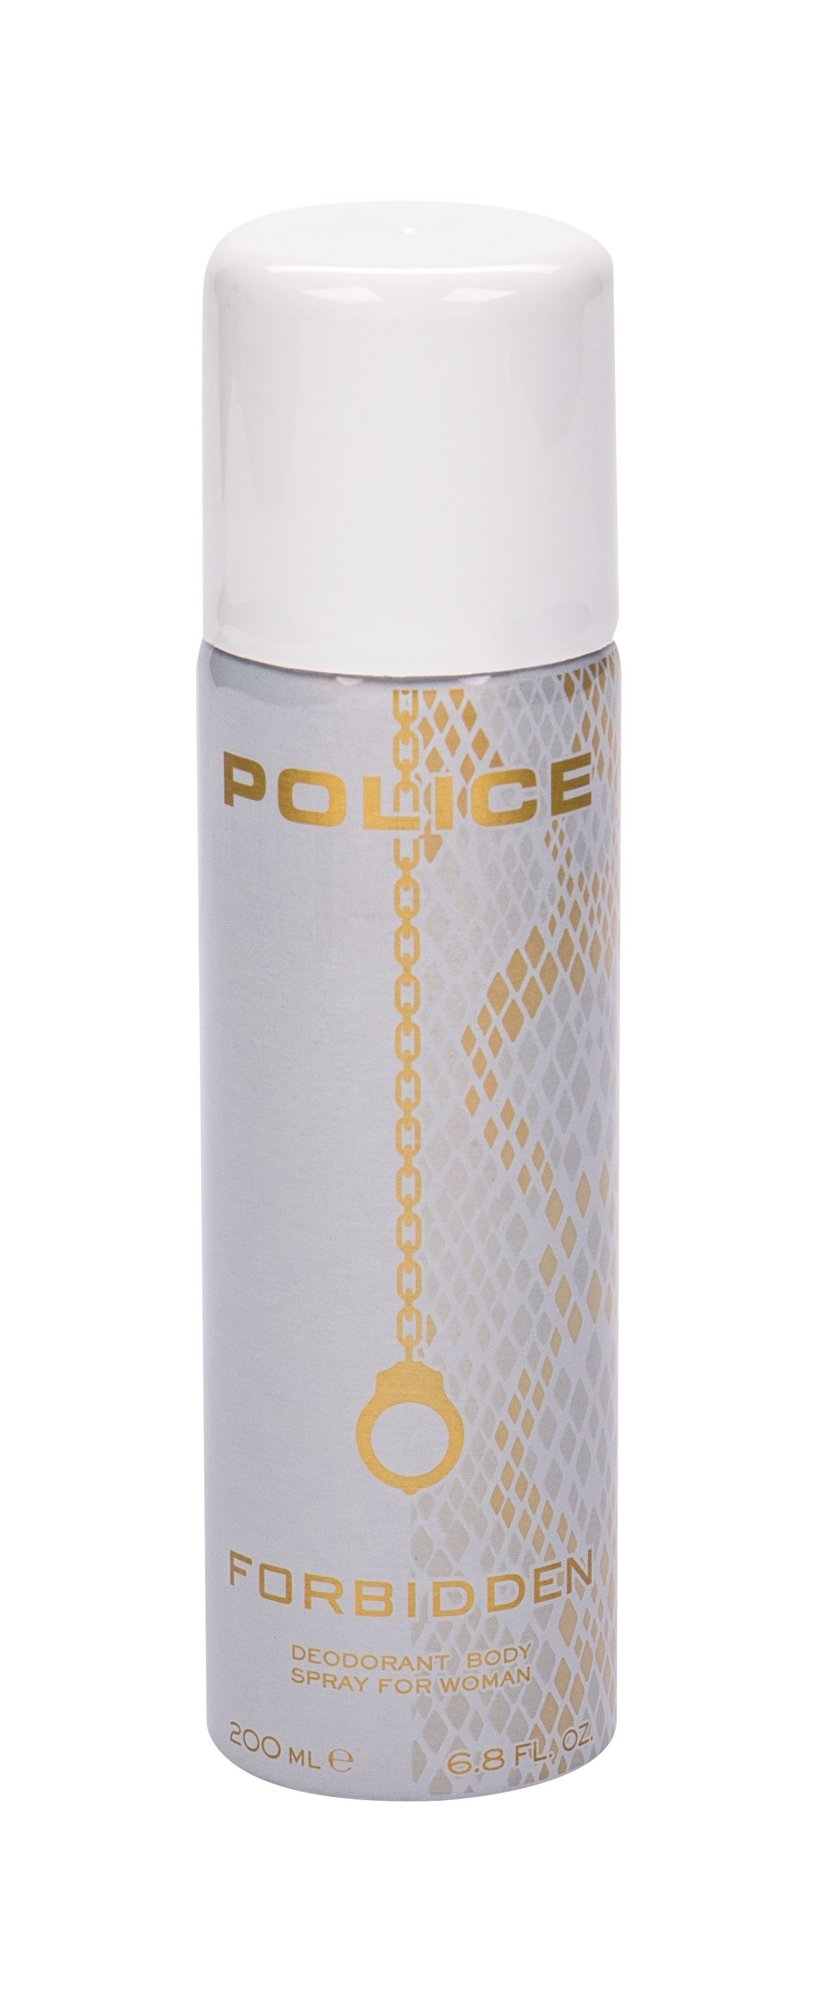 Police Forbidden, Dezodorant 200ml